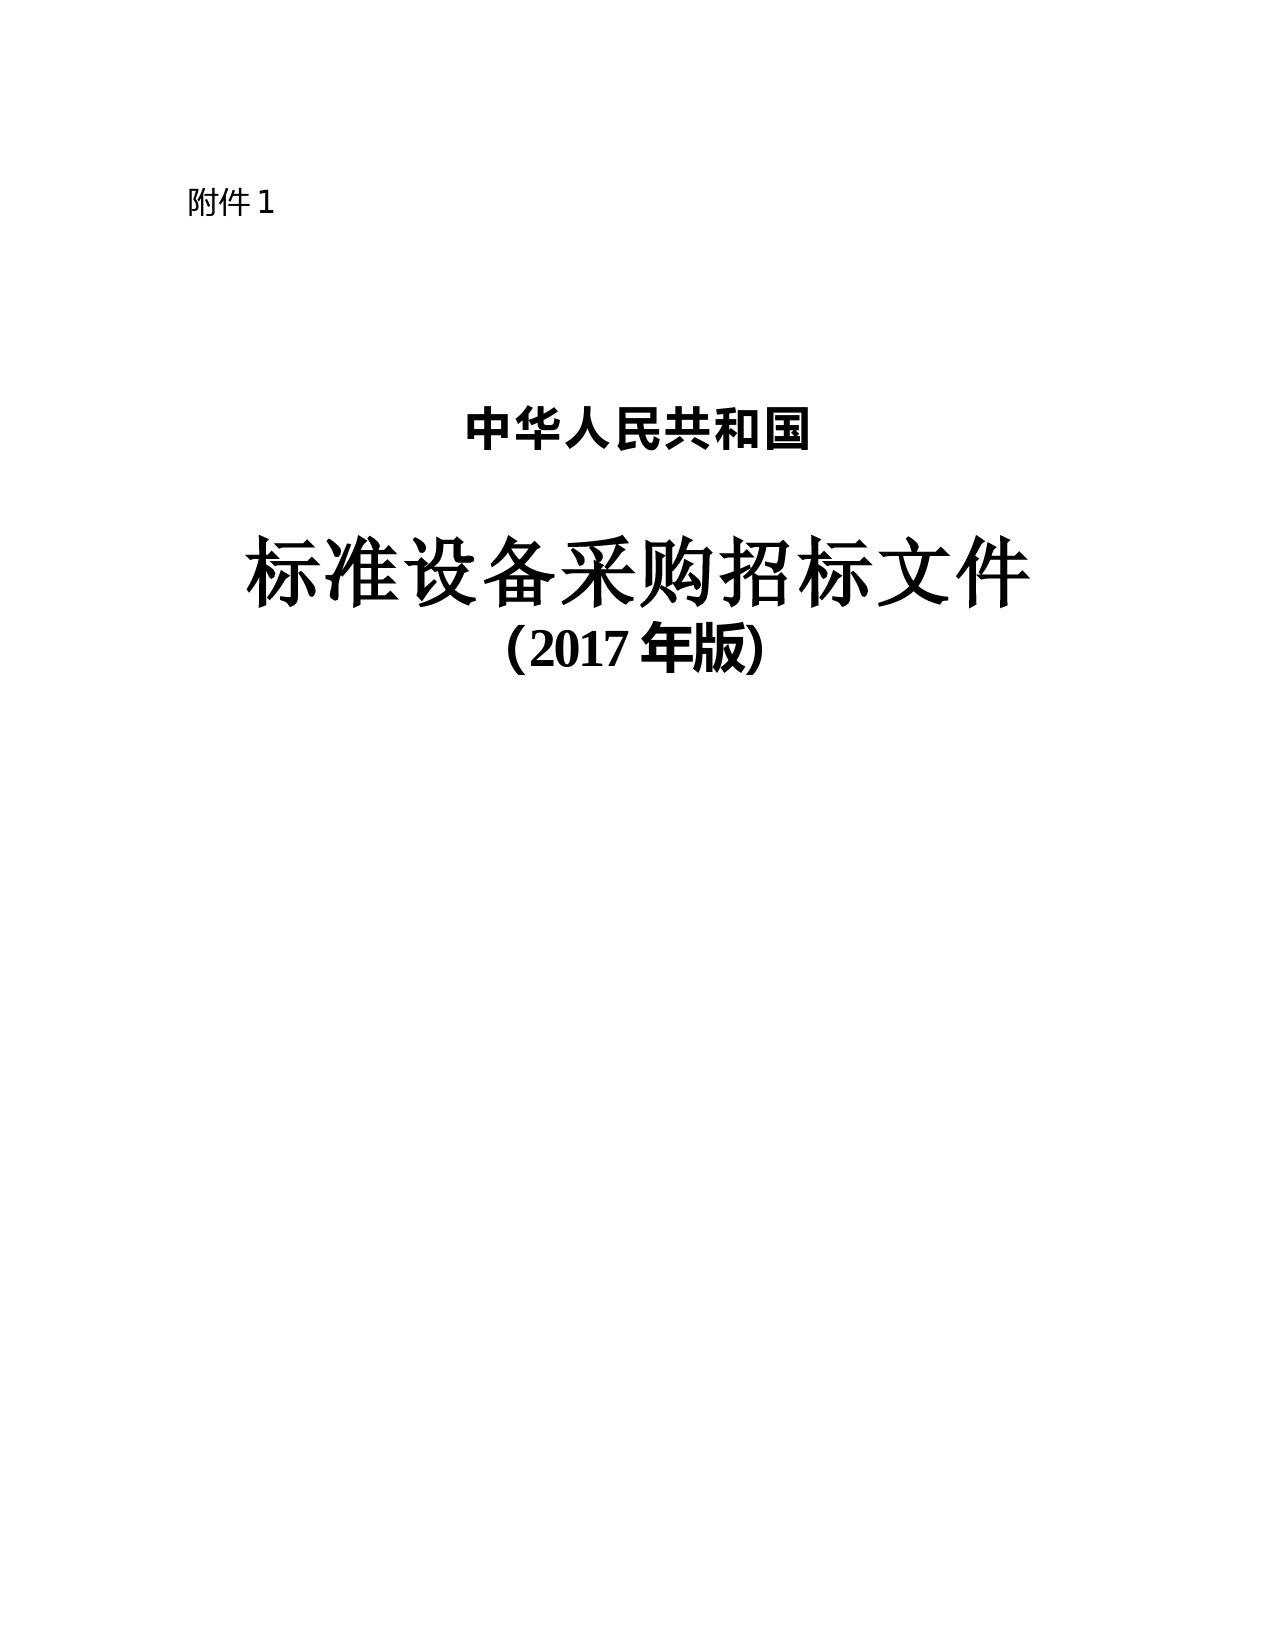 (完整版)中华人民共和国标准设备采购招标文件(2017年版)